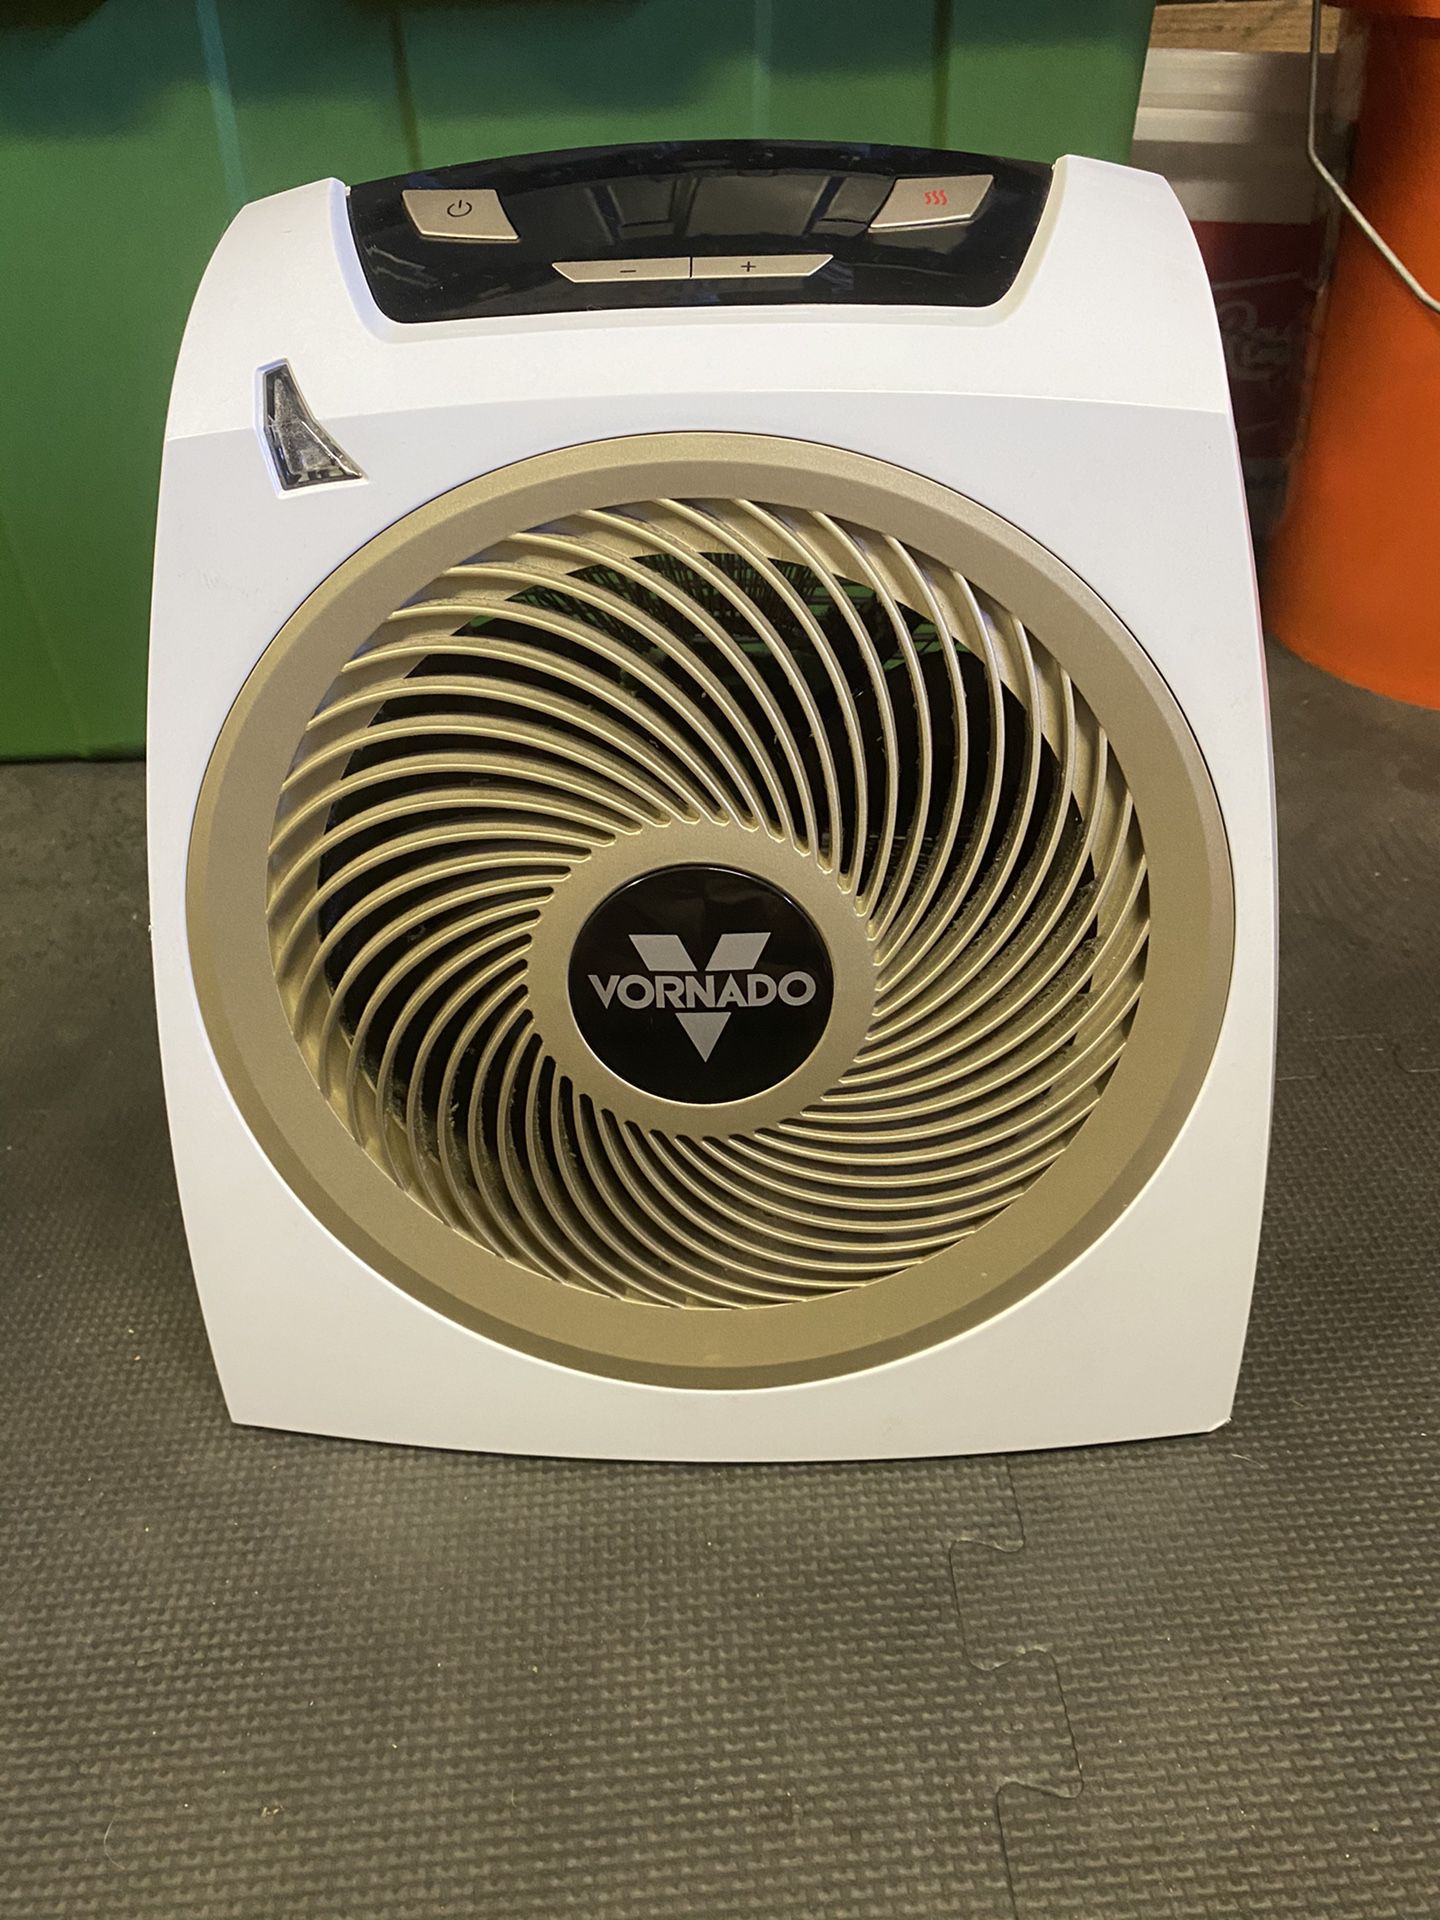 Vornado space heater